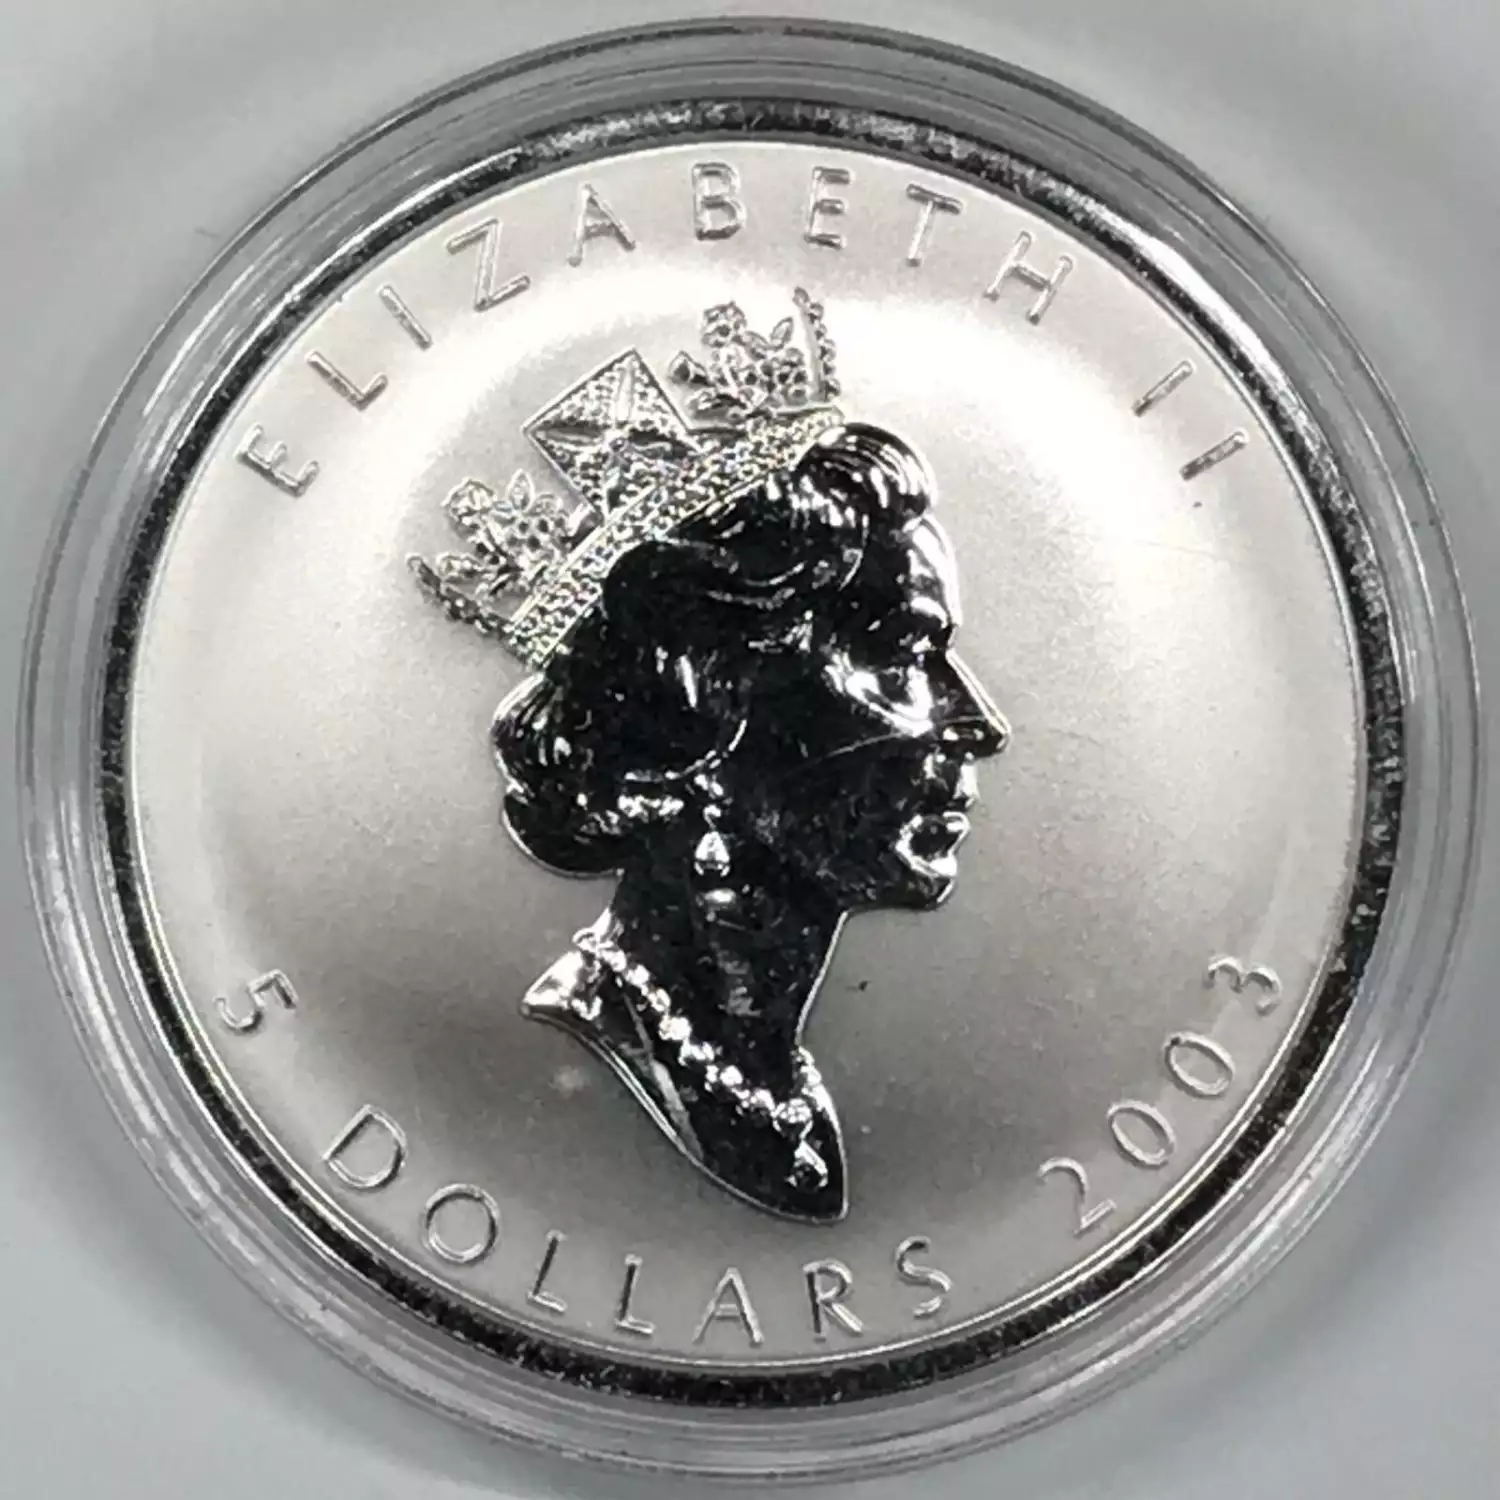 CANADA Silver 5 DOLLARS